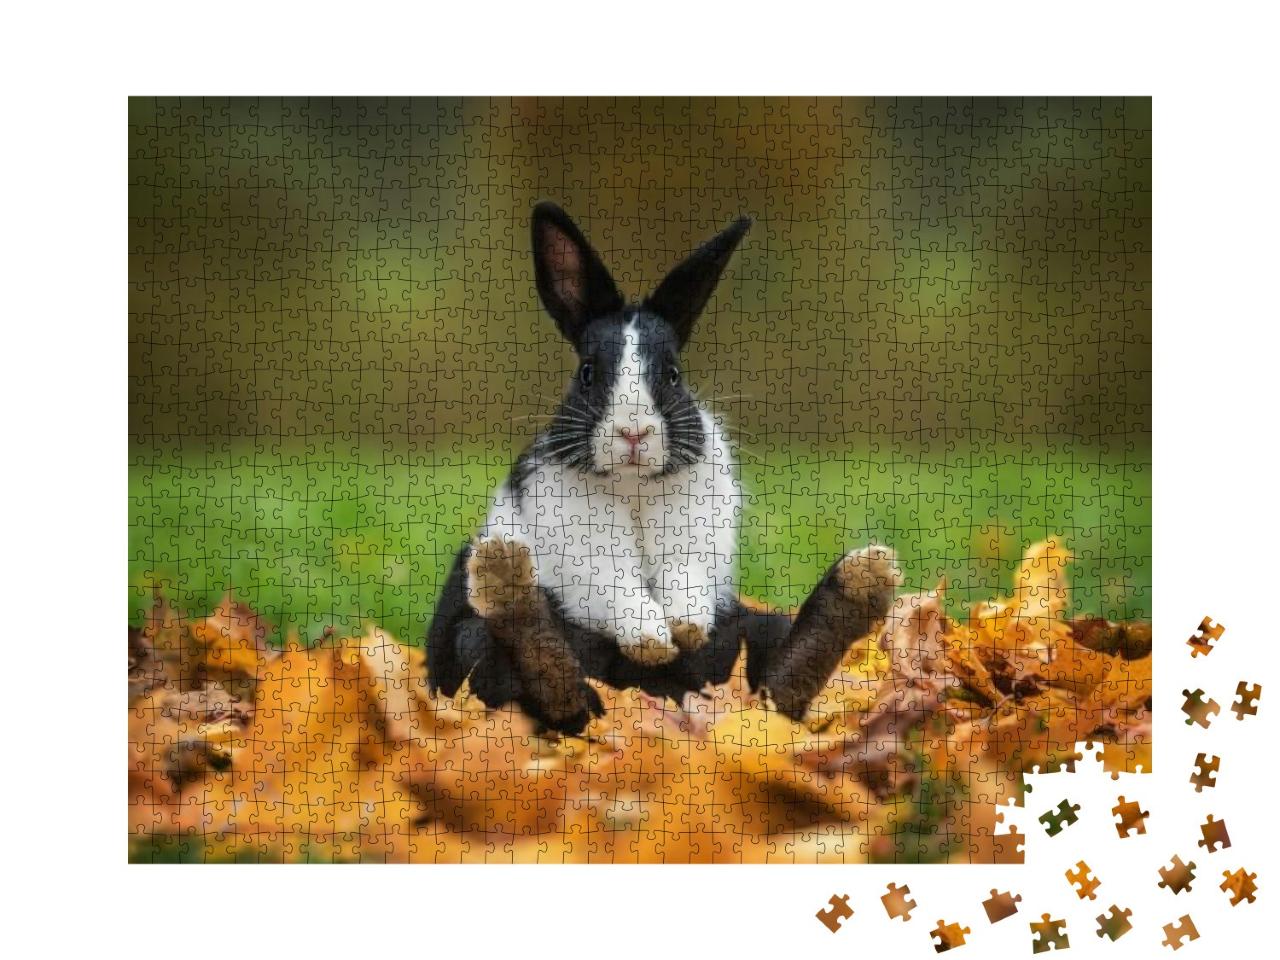 Puzzle 1000 Teile „Kleines lustiges Kaninchen sitzt im Herbstlaub“